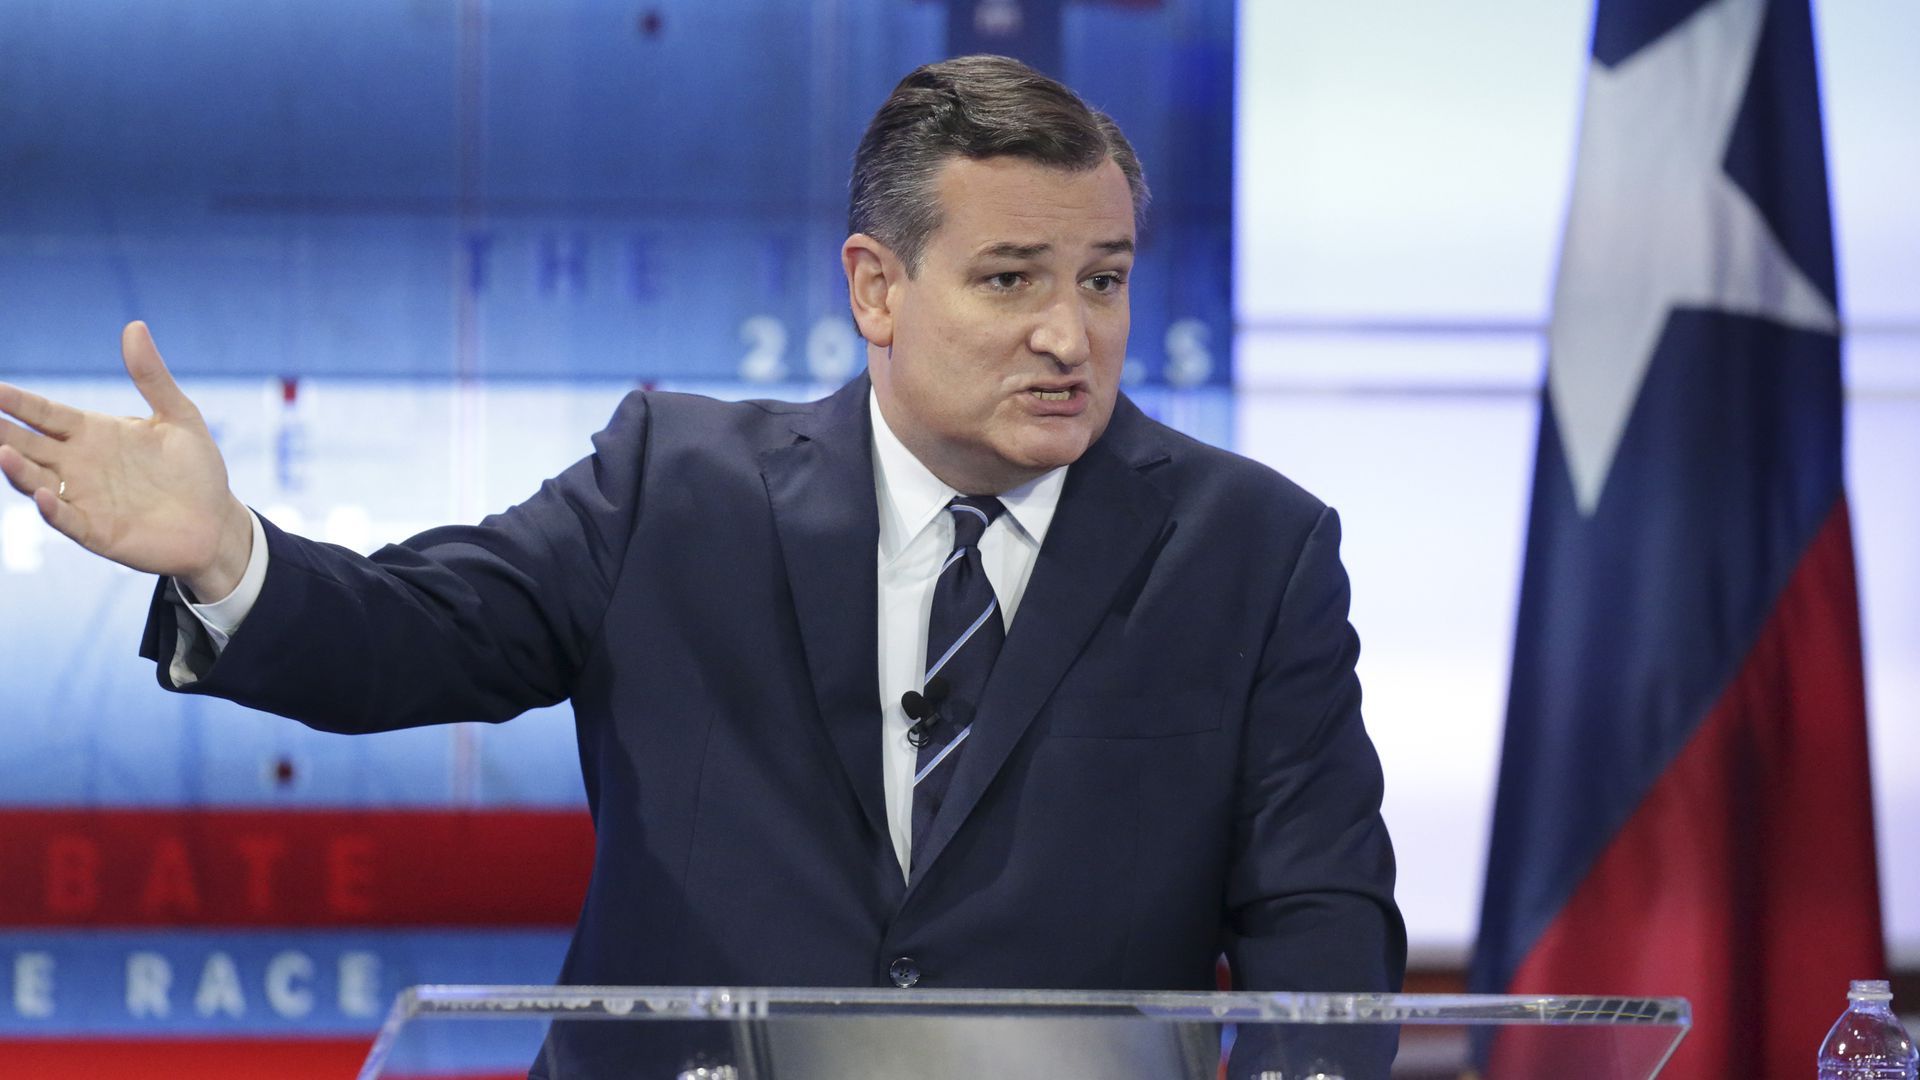 Ted Cruz during a debate